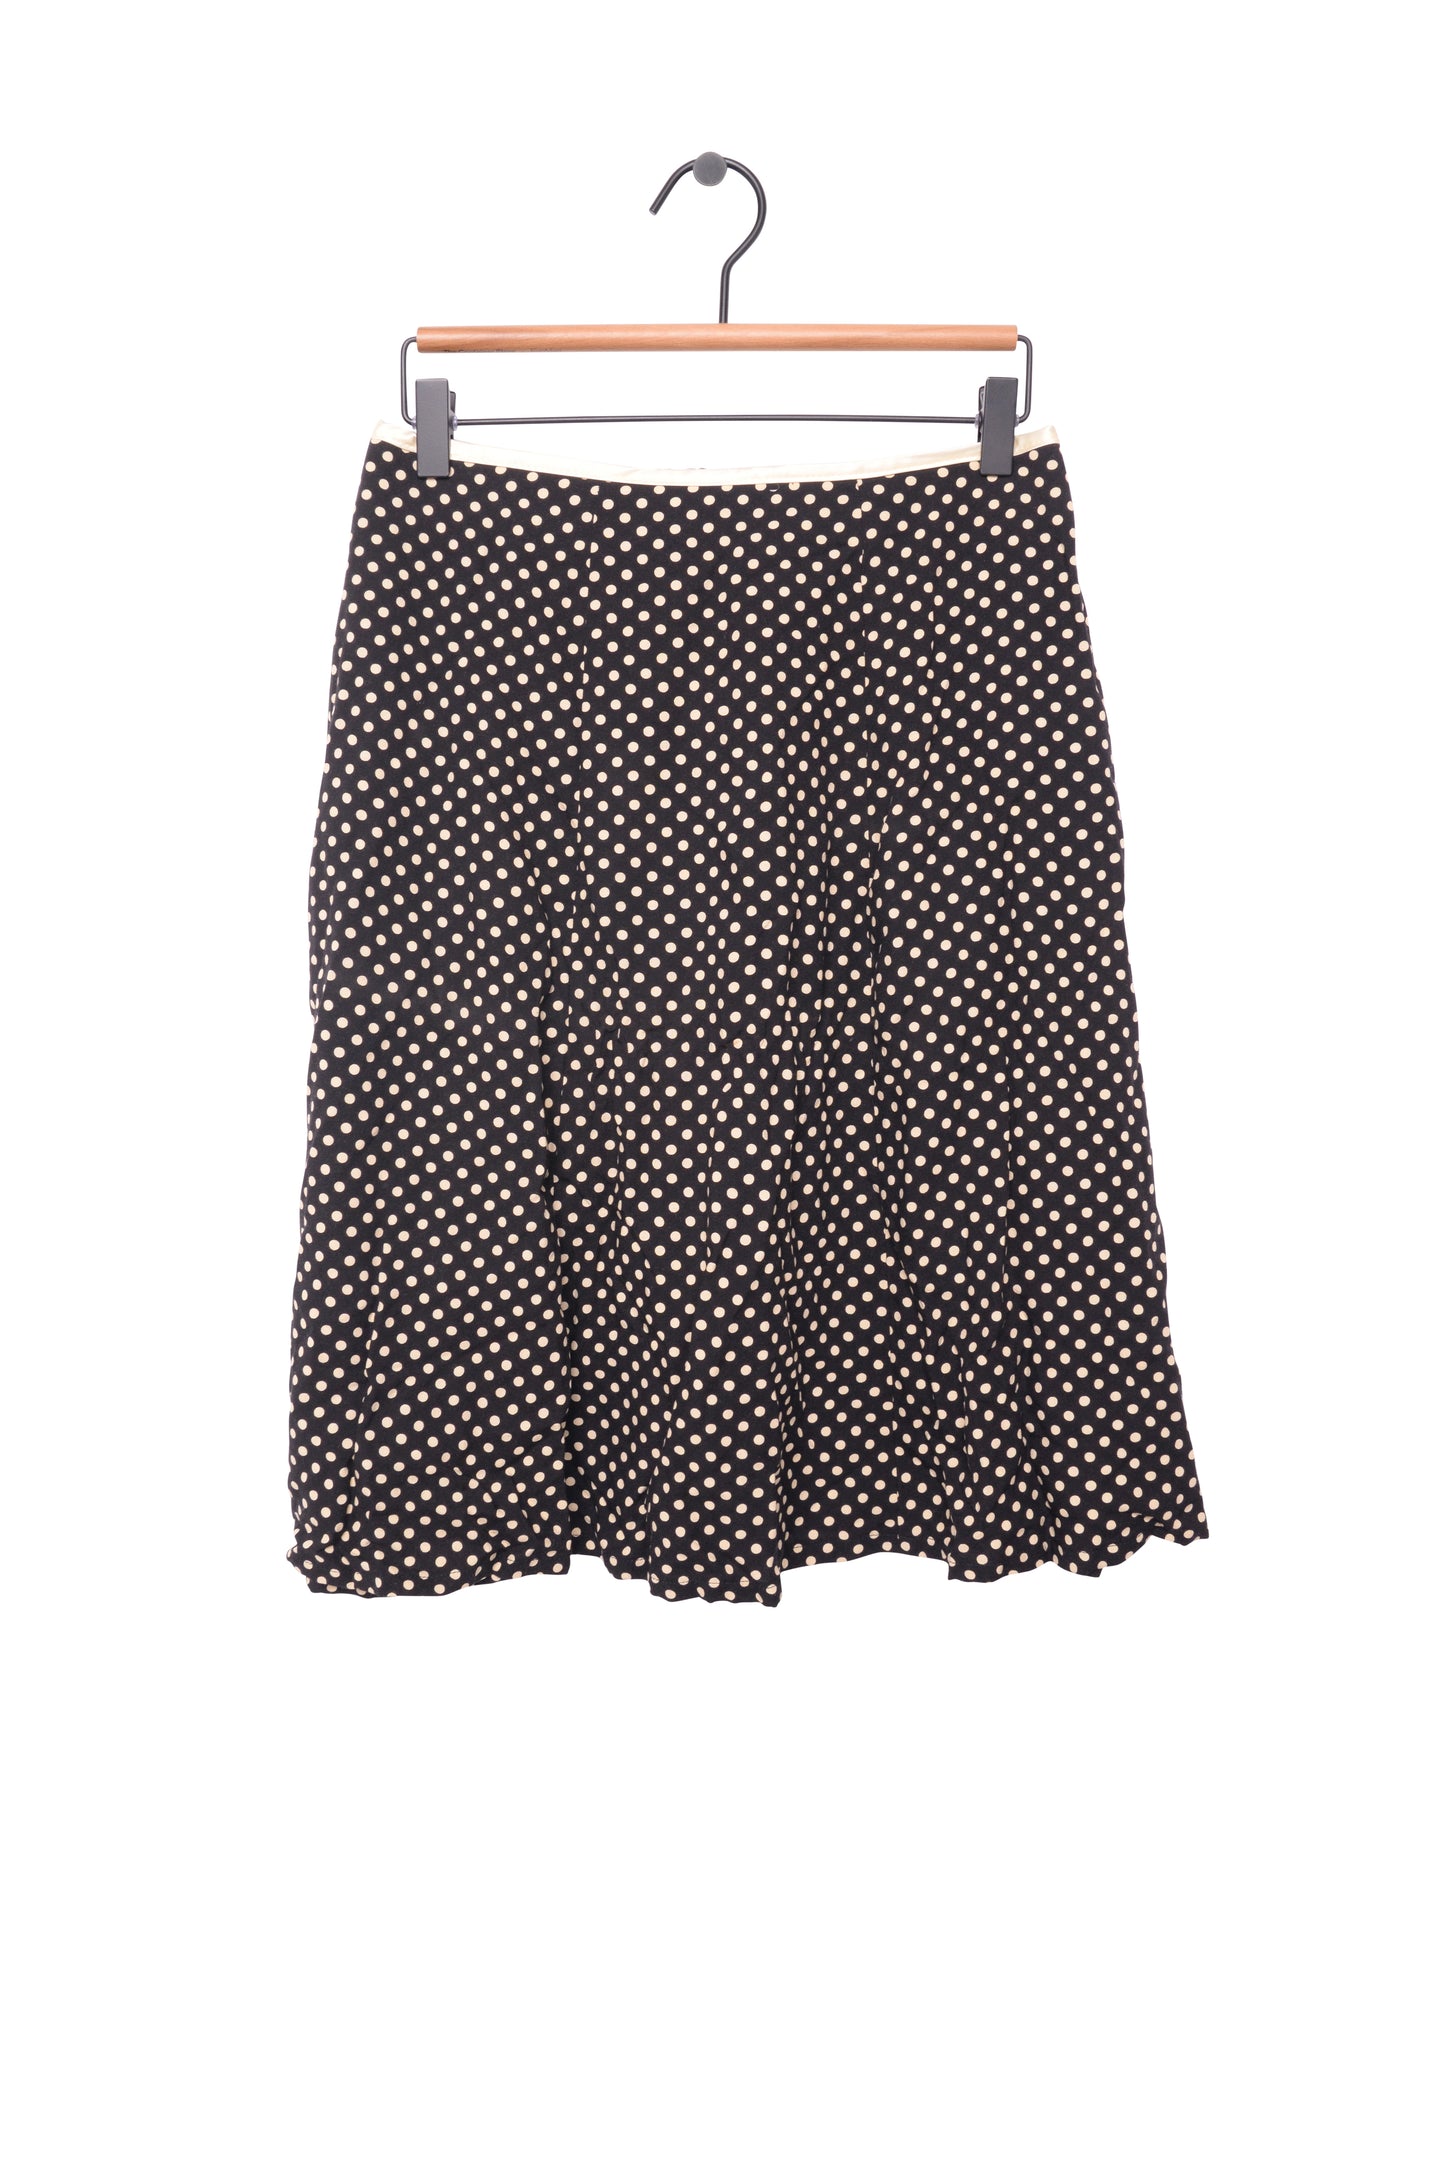 1960s Polka Dot Pleated Skirt